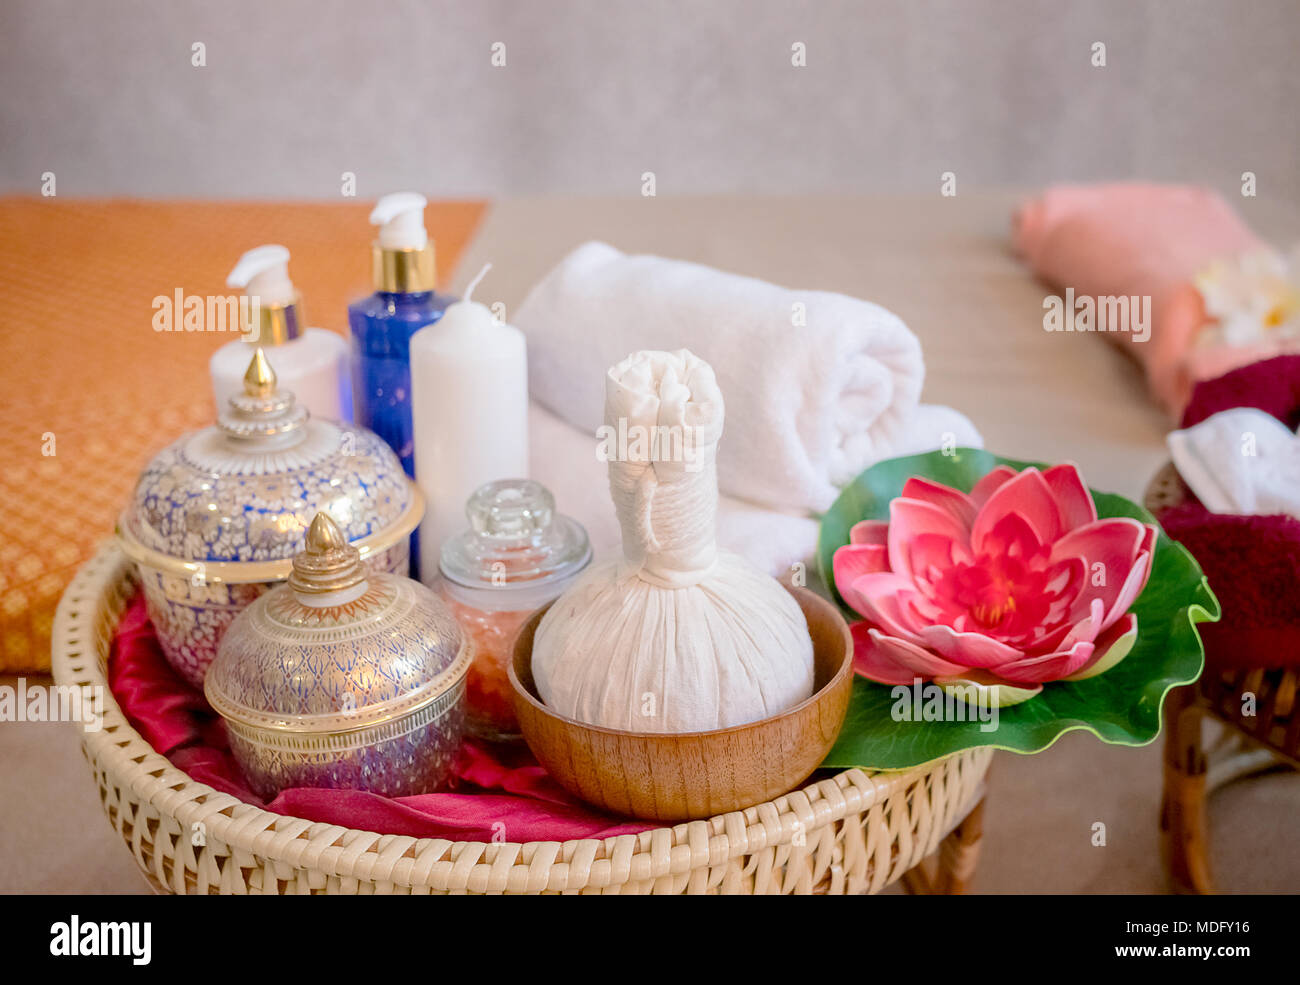 Thai Spa massaggi impostazione con spa olio essenziale,tailandese alle erbe ball,sale marino Foto Stock